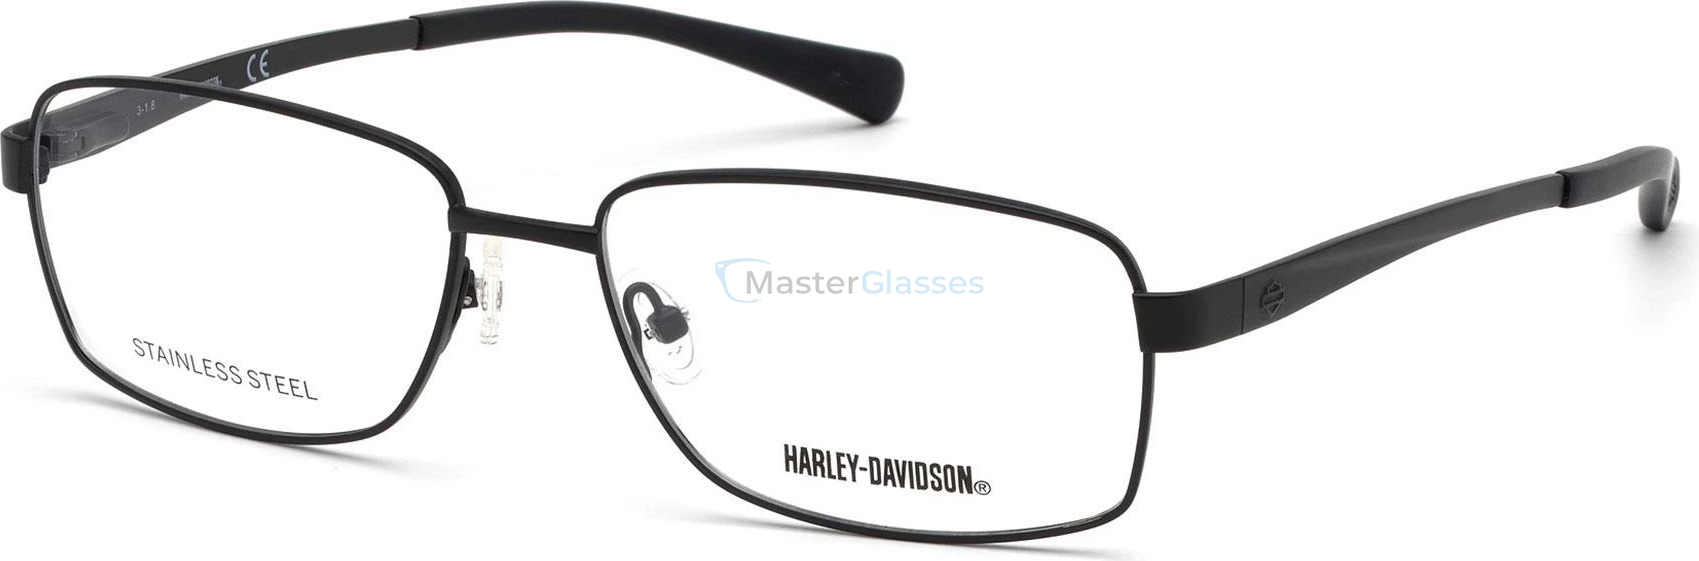 HARLEY-DAVIDSON HD 0780 002 58